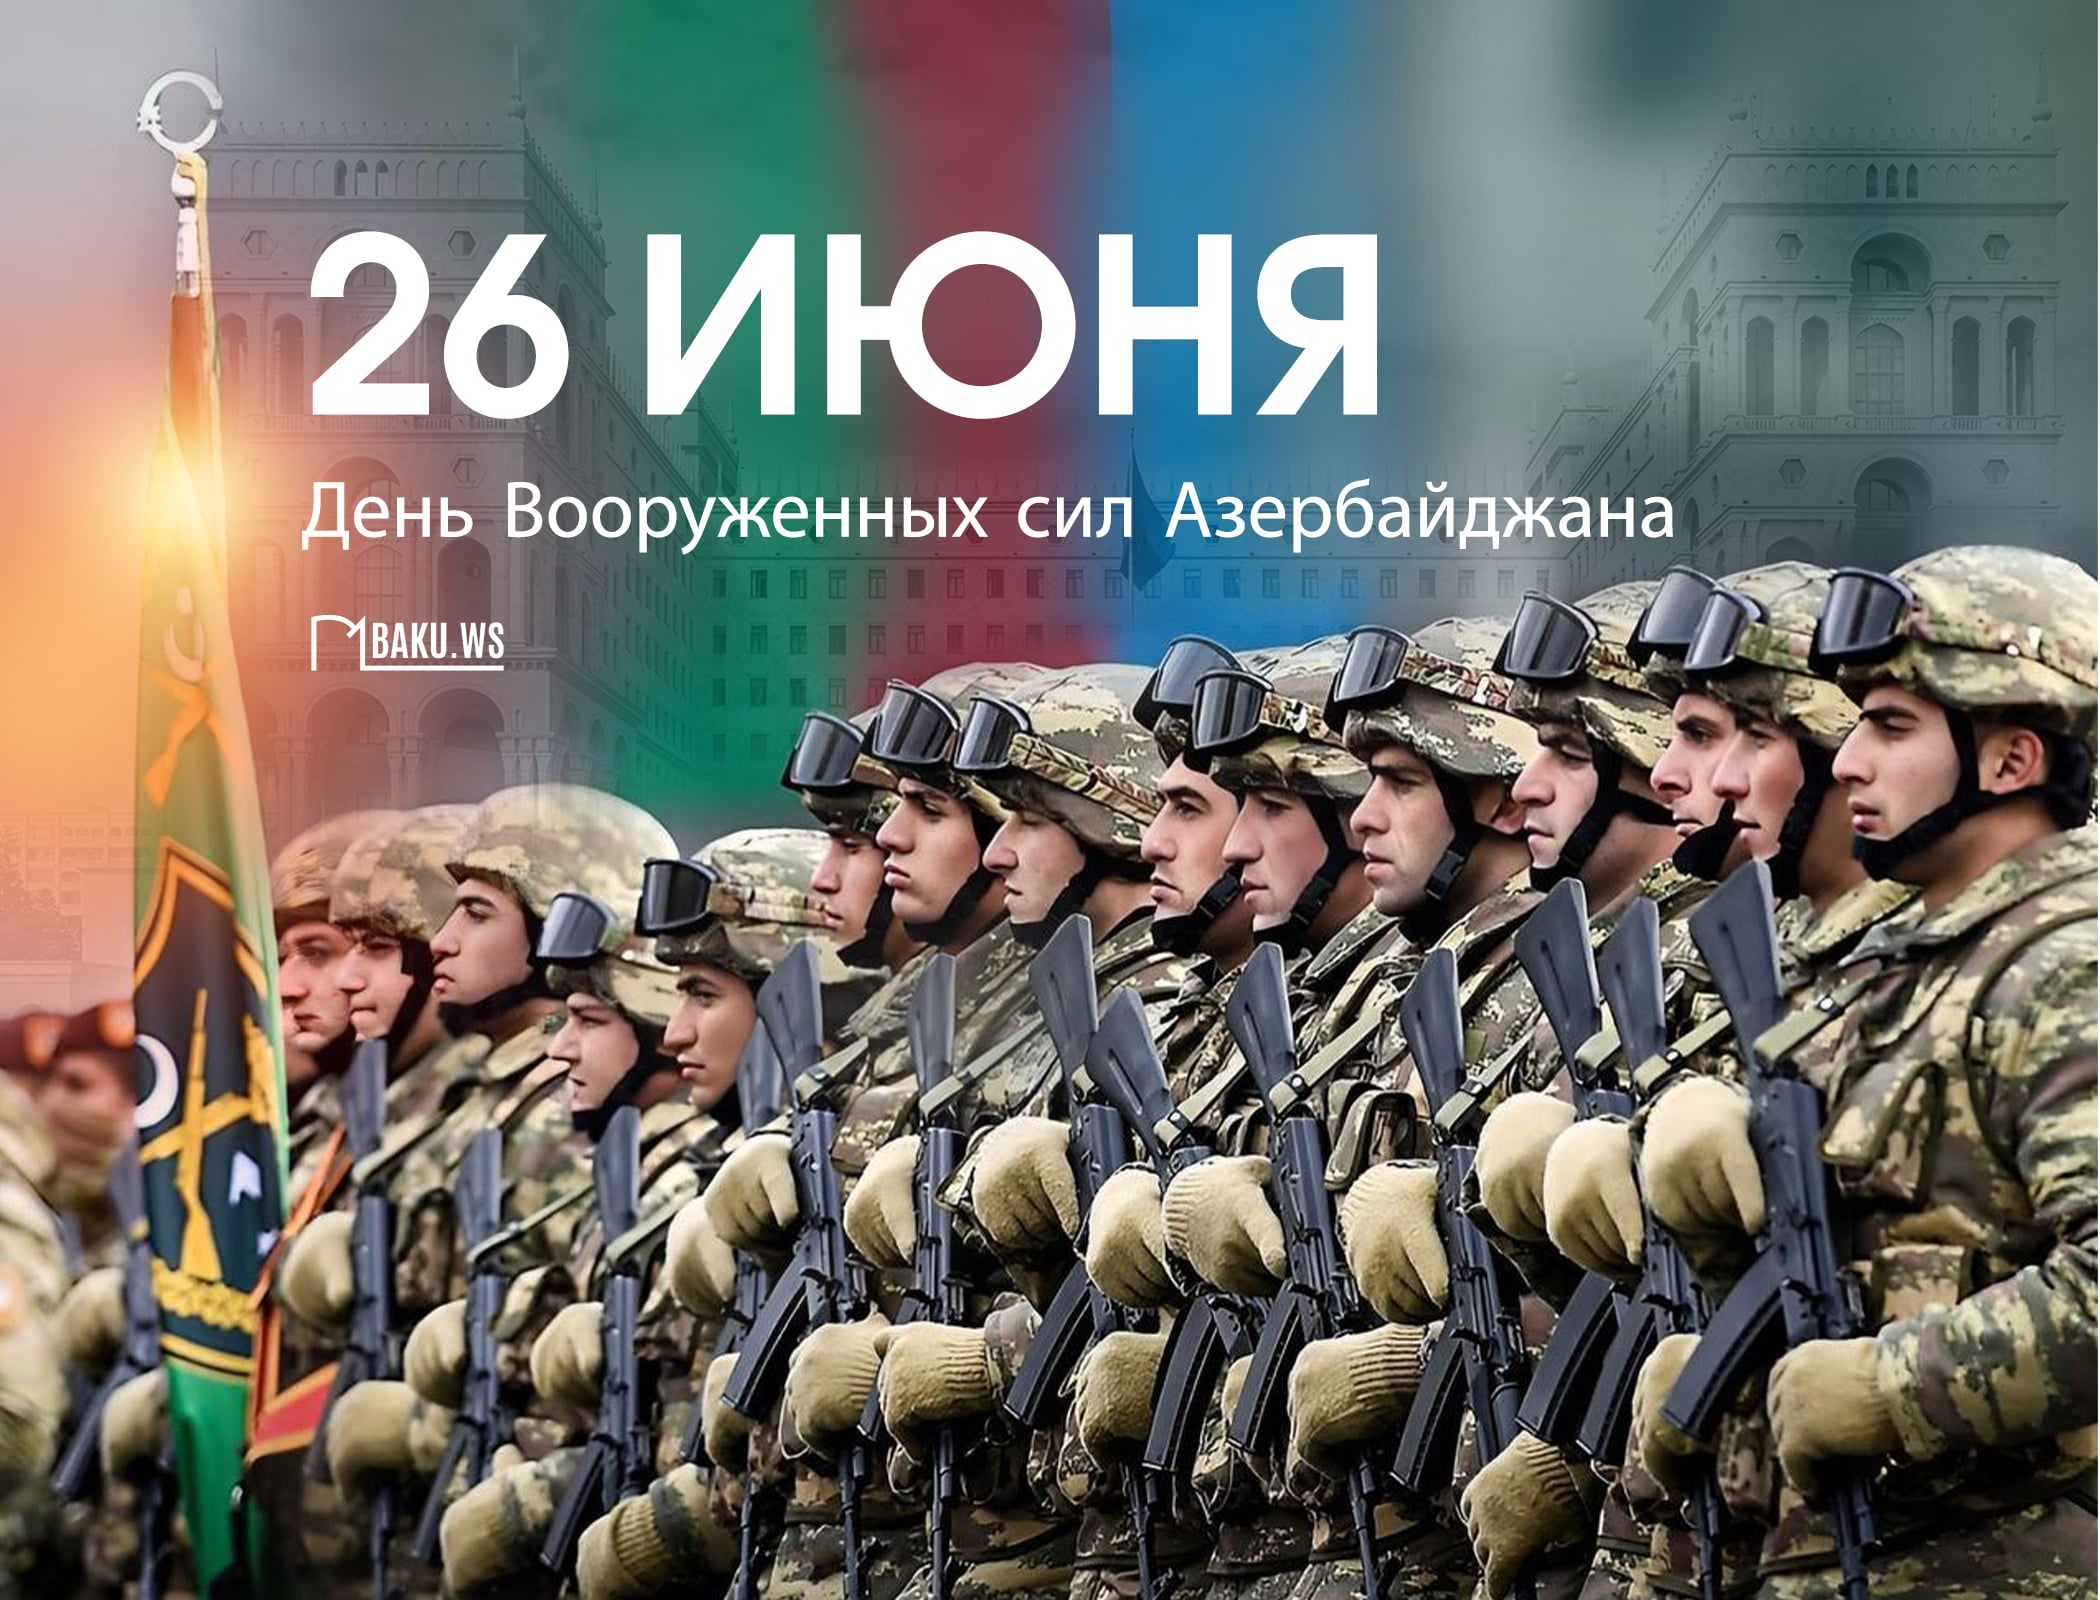 В Азербайджане отмечается 106-я годовщина со дня создания Вооруженных сил